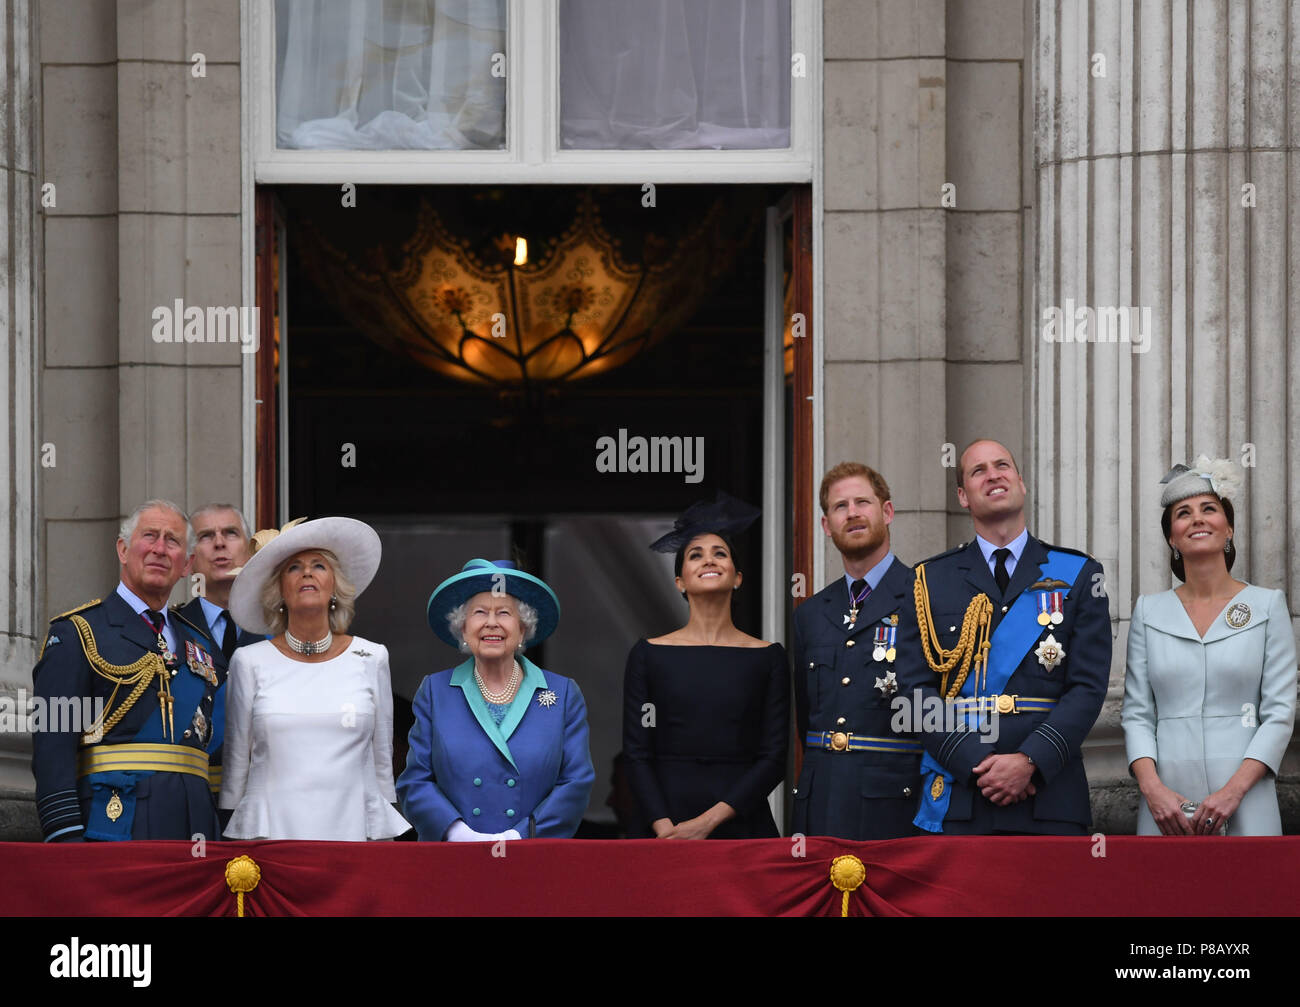 (De gauche à droite) Prince de Galles, duc de York (l'ombre), la duchesse de Cornouailles, la reine Elizabeth II, duchesse de Sussex, duc de Sussex, duc de Cambridge et la duchesse de Cambridge sur le balcon de Buckingham Palace, où ils ont vu un défilé aérien de la Royal Air Force sur le centre de Londres à l'occasion du centenaire de la Royal Air Force.. Banque D'Images